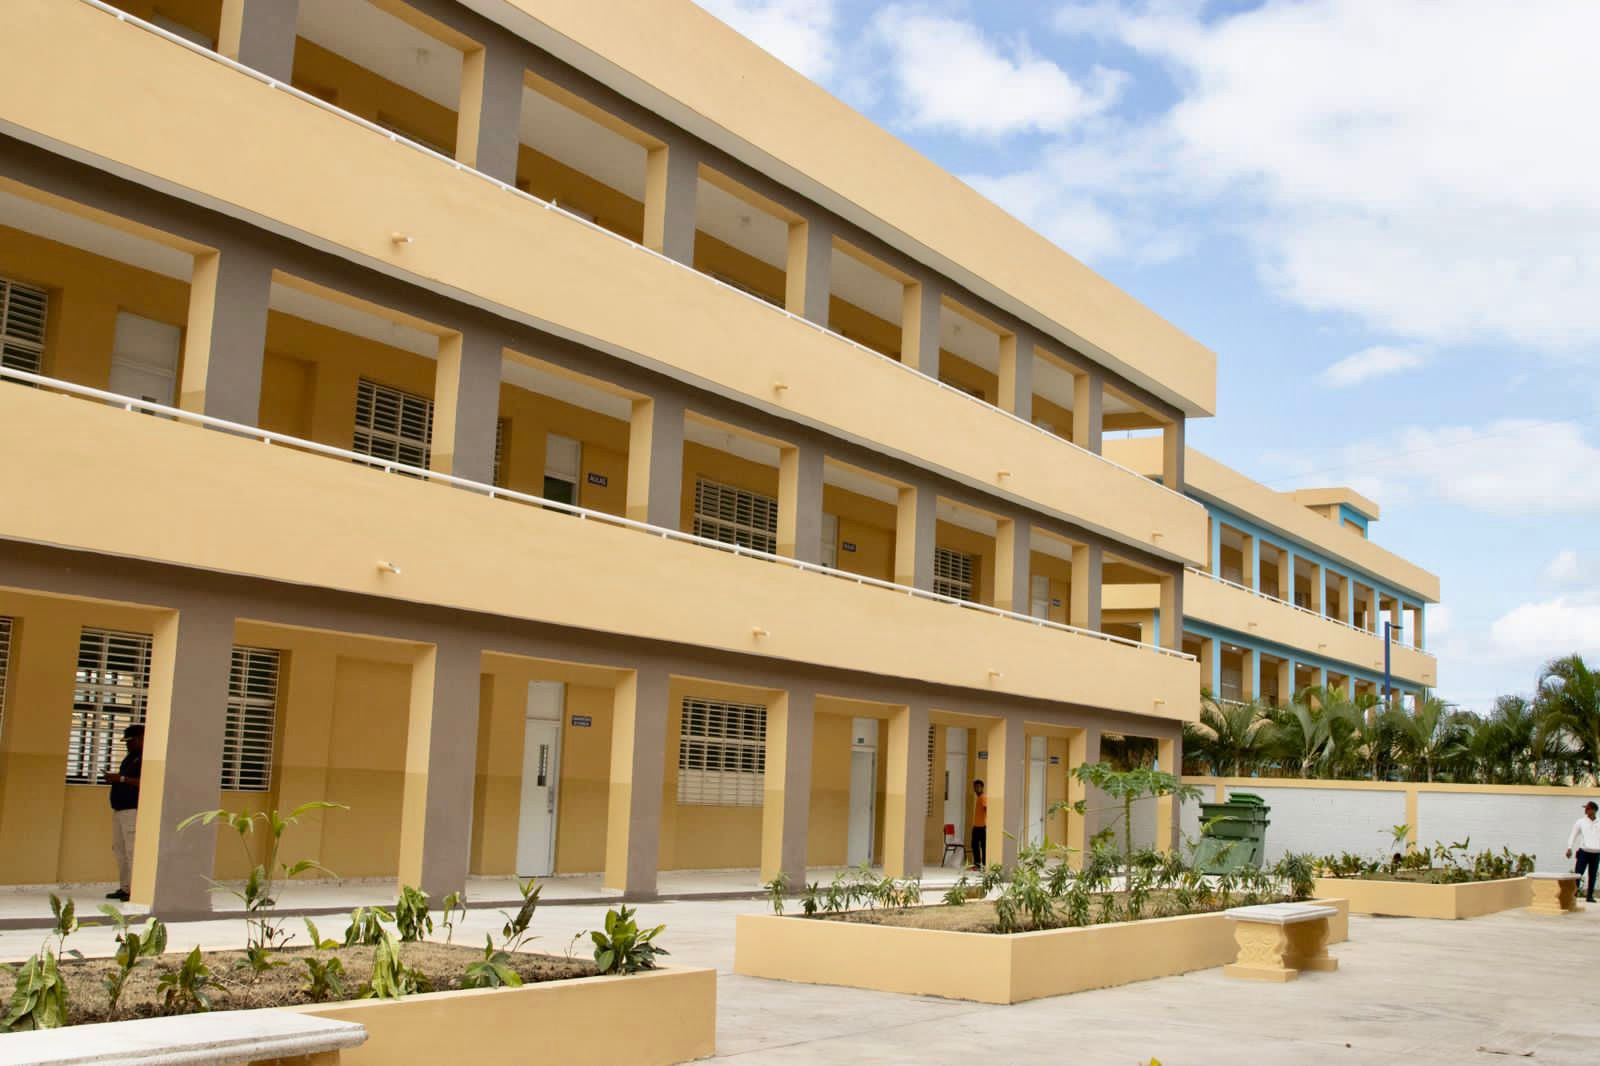 REPÚBLICA DOMINICANA: Presidente Luis Abinader inaugura Liceo Emmanuel en SDE; inversión supera los RD 79 millones